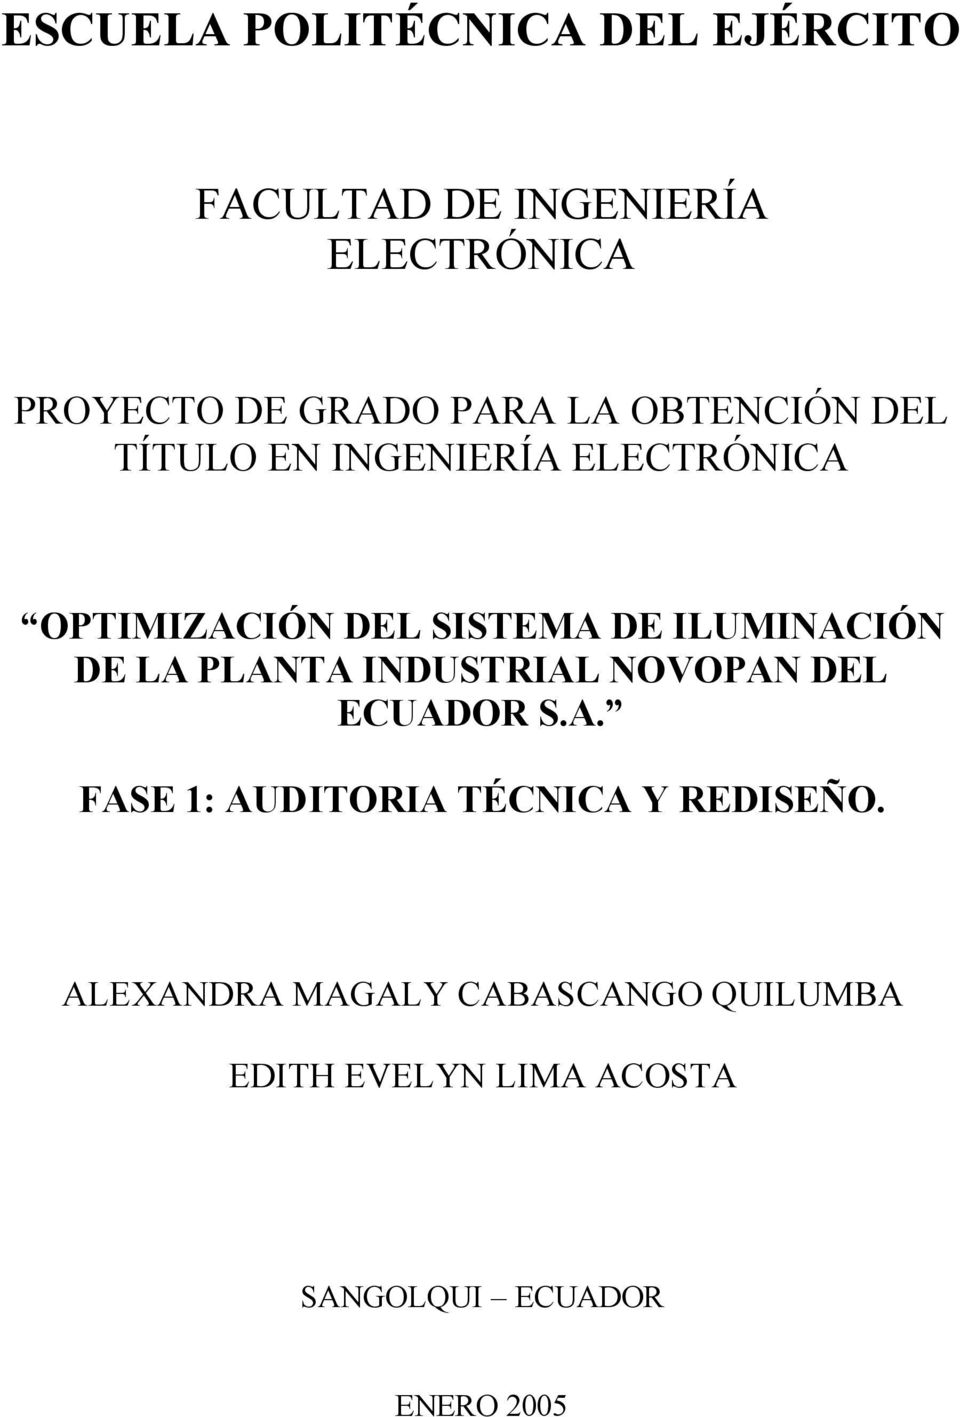 ILUMINACIÓN DE LA PLANTA INDUSTRIAL NOVOPAN DEL ECUADOR S.A. FASE 1: AUDITORIA TÉCNICA Y REDISEÑO.